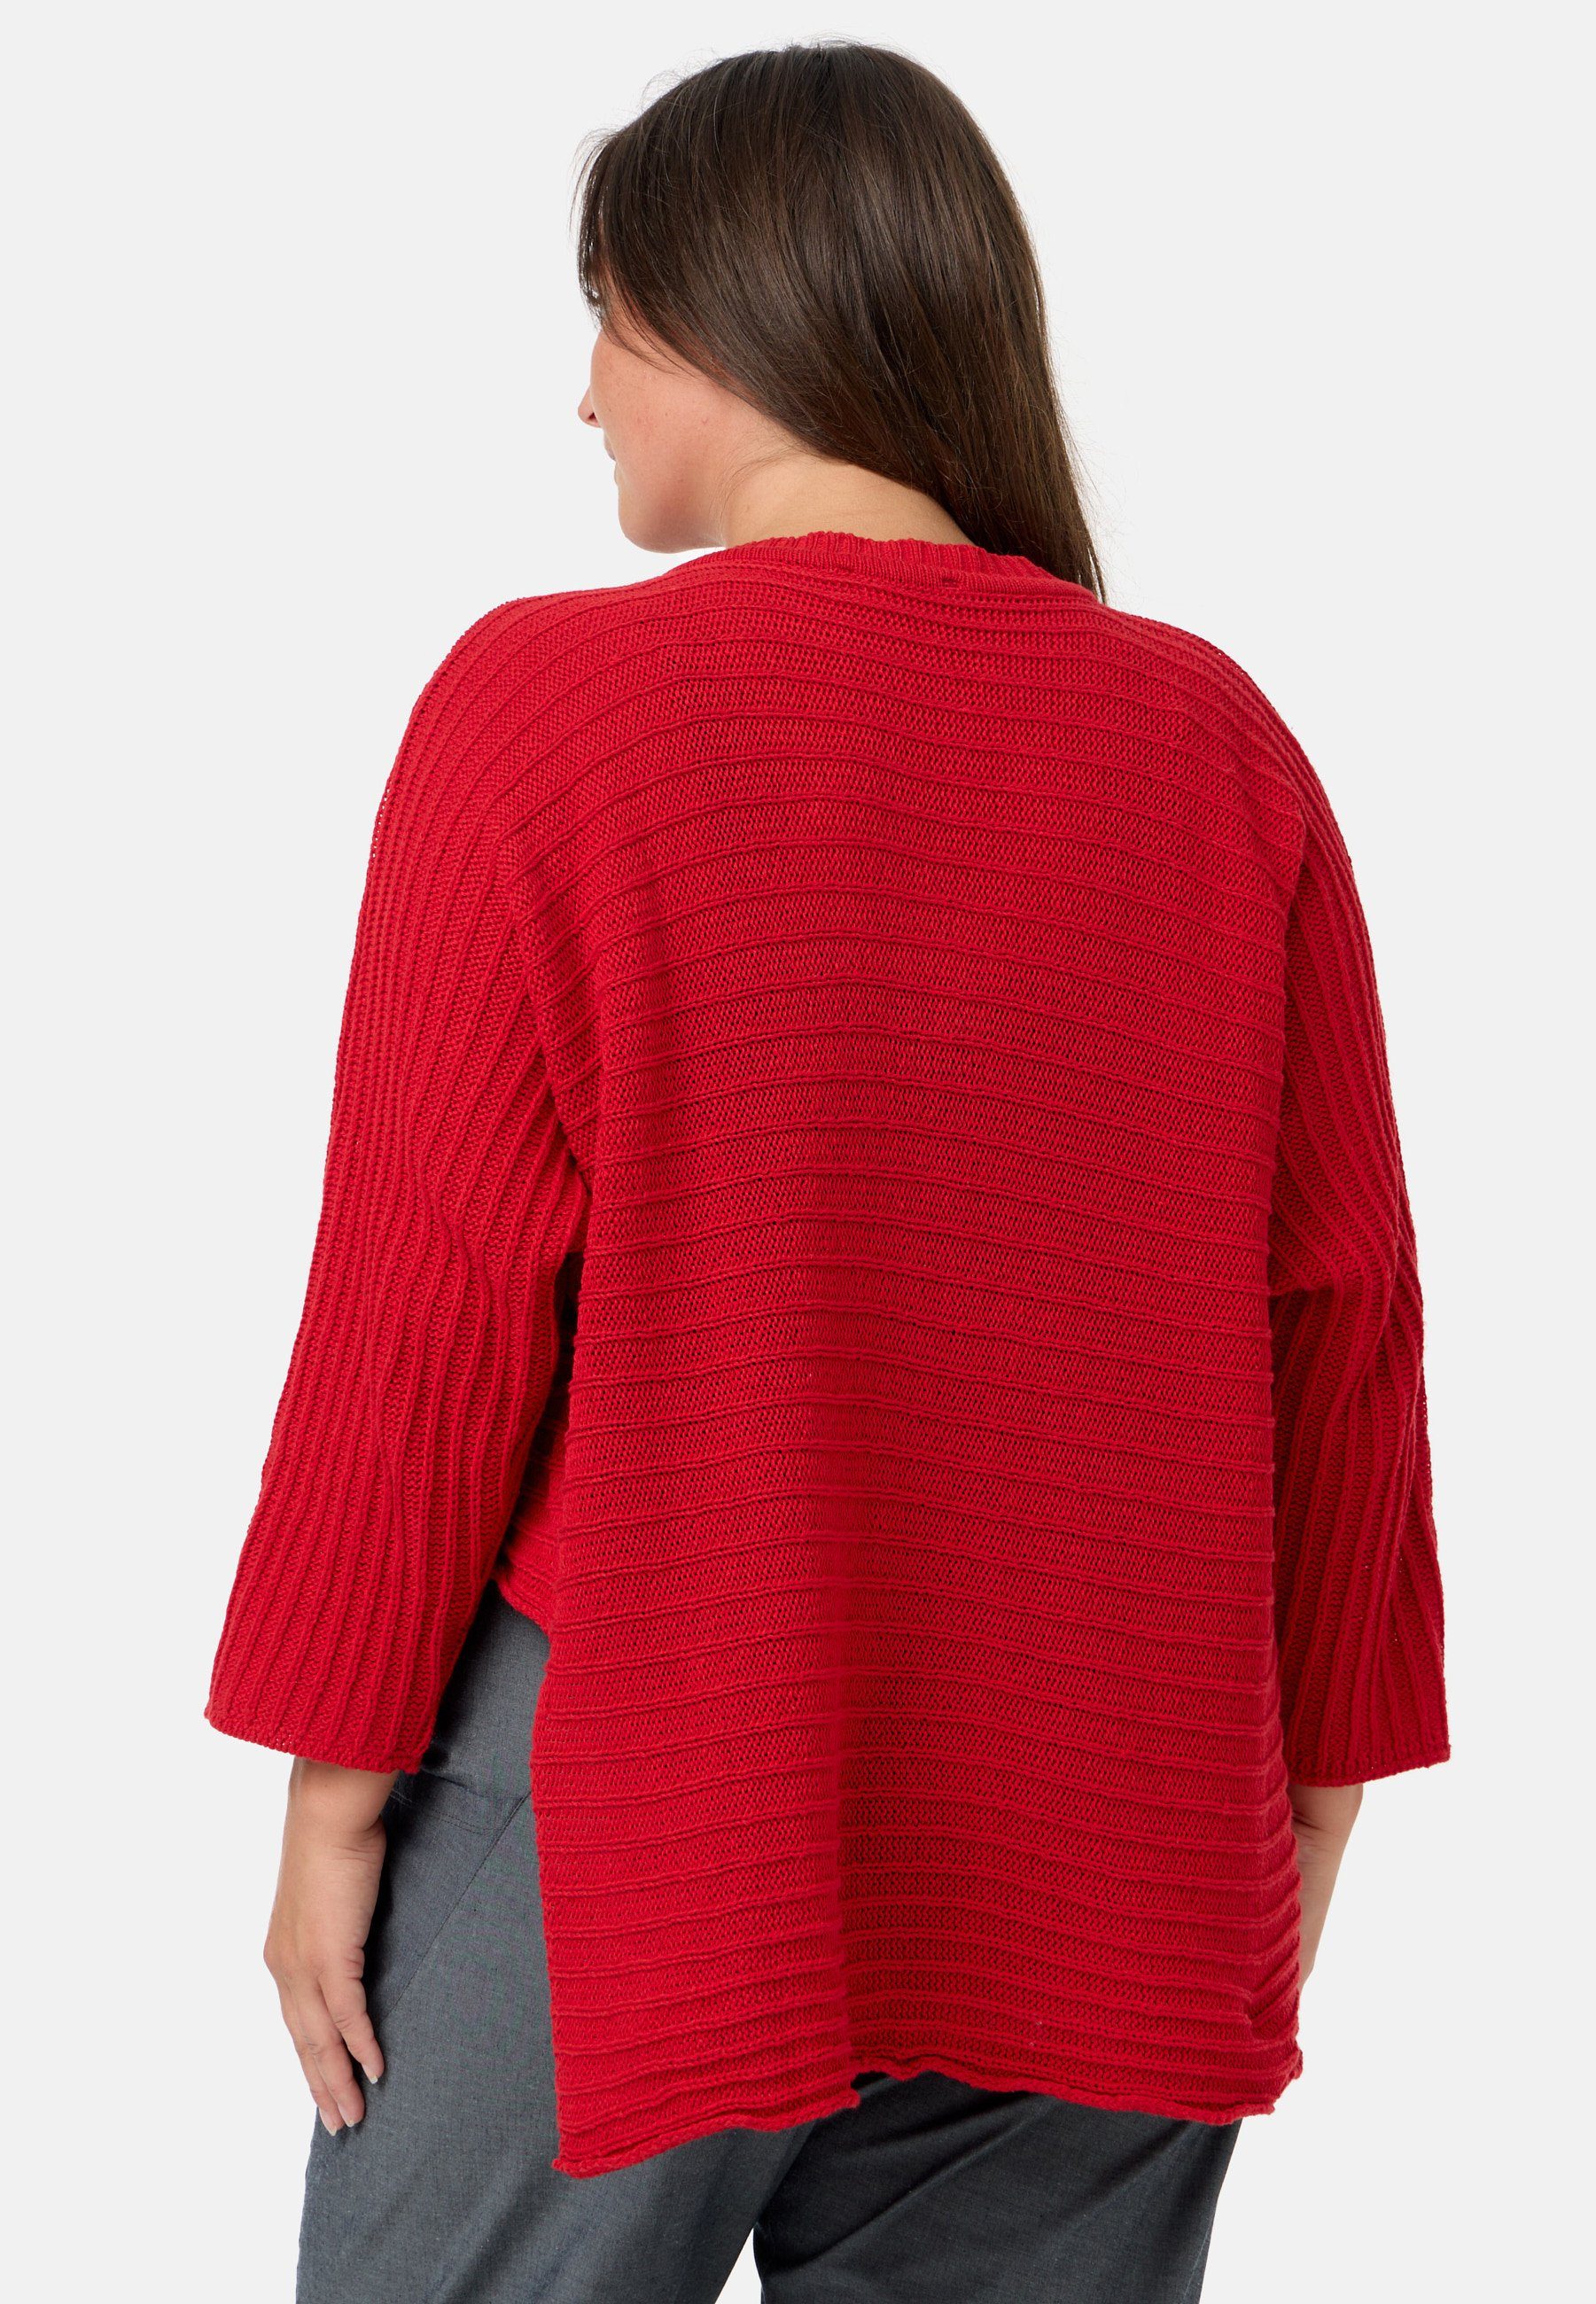 Kekoo Strickpullover Rot asymmetrischem 100% aus Baumwolle 'Pure' Strickshirt Stil im